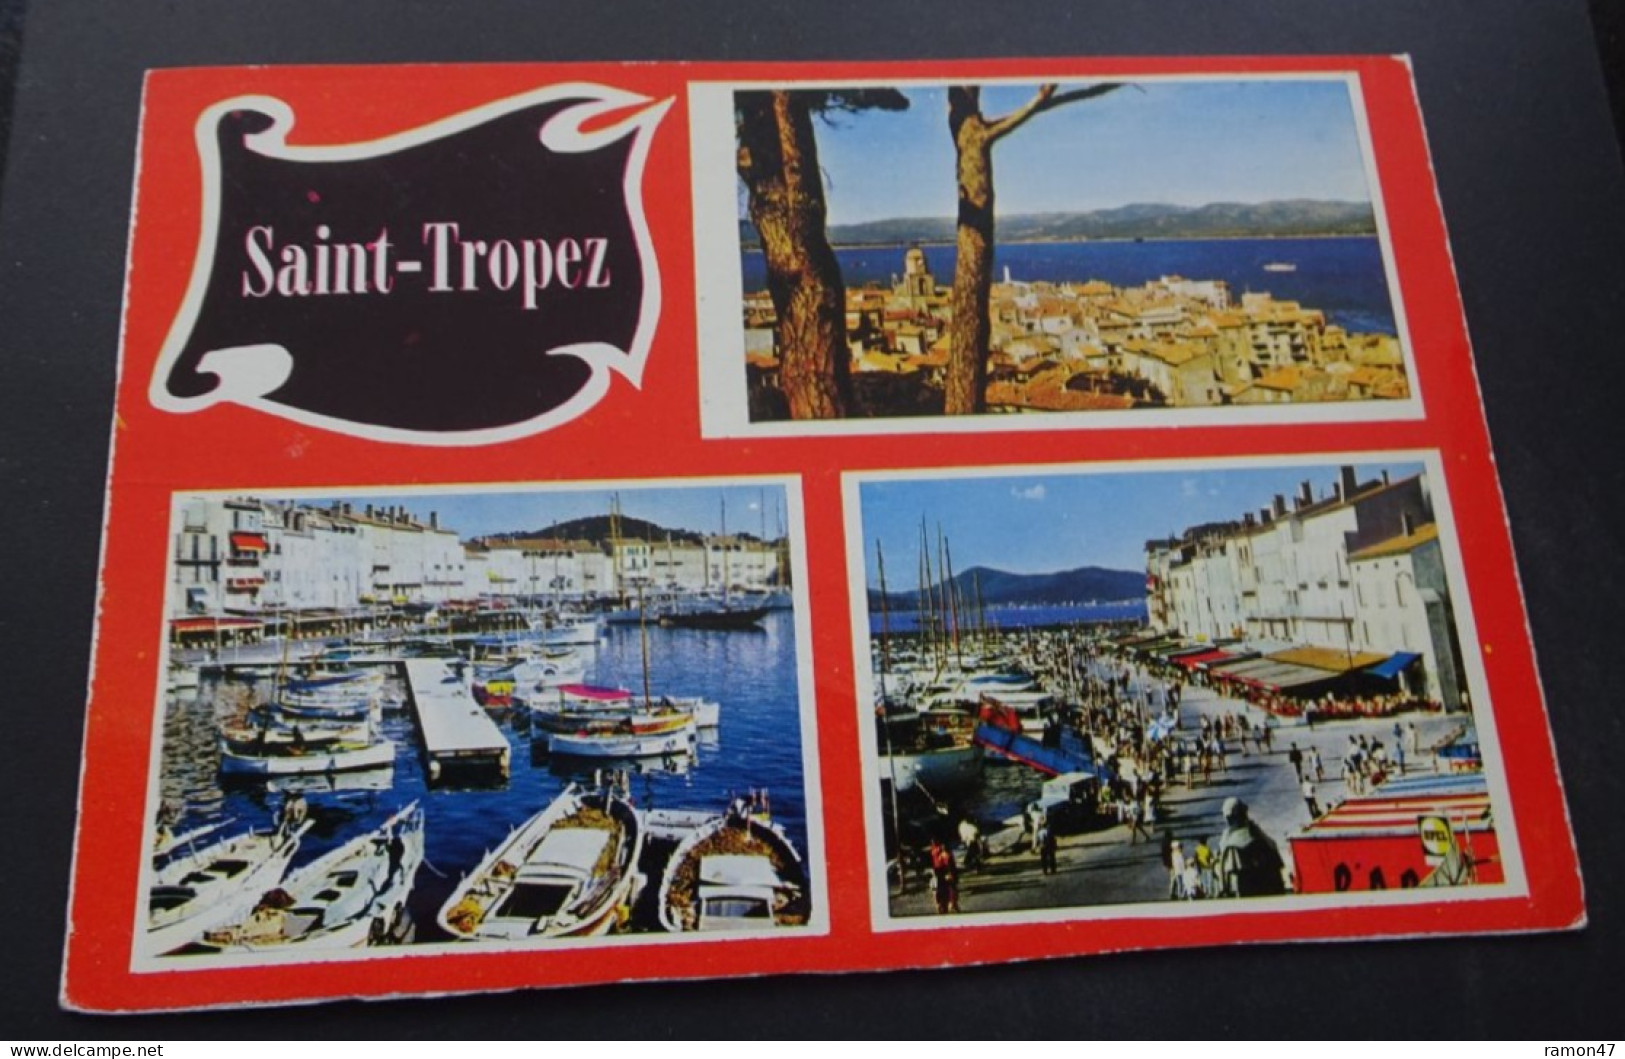 Saint-Tropez (Var) - Les Editions Aris, Bandol - Saint-Tropez